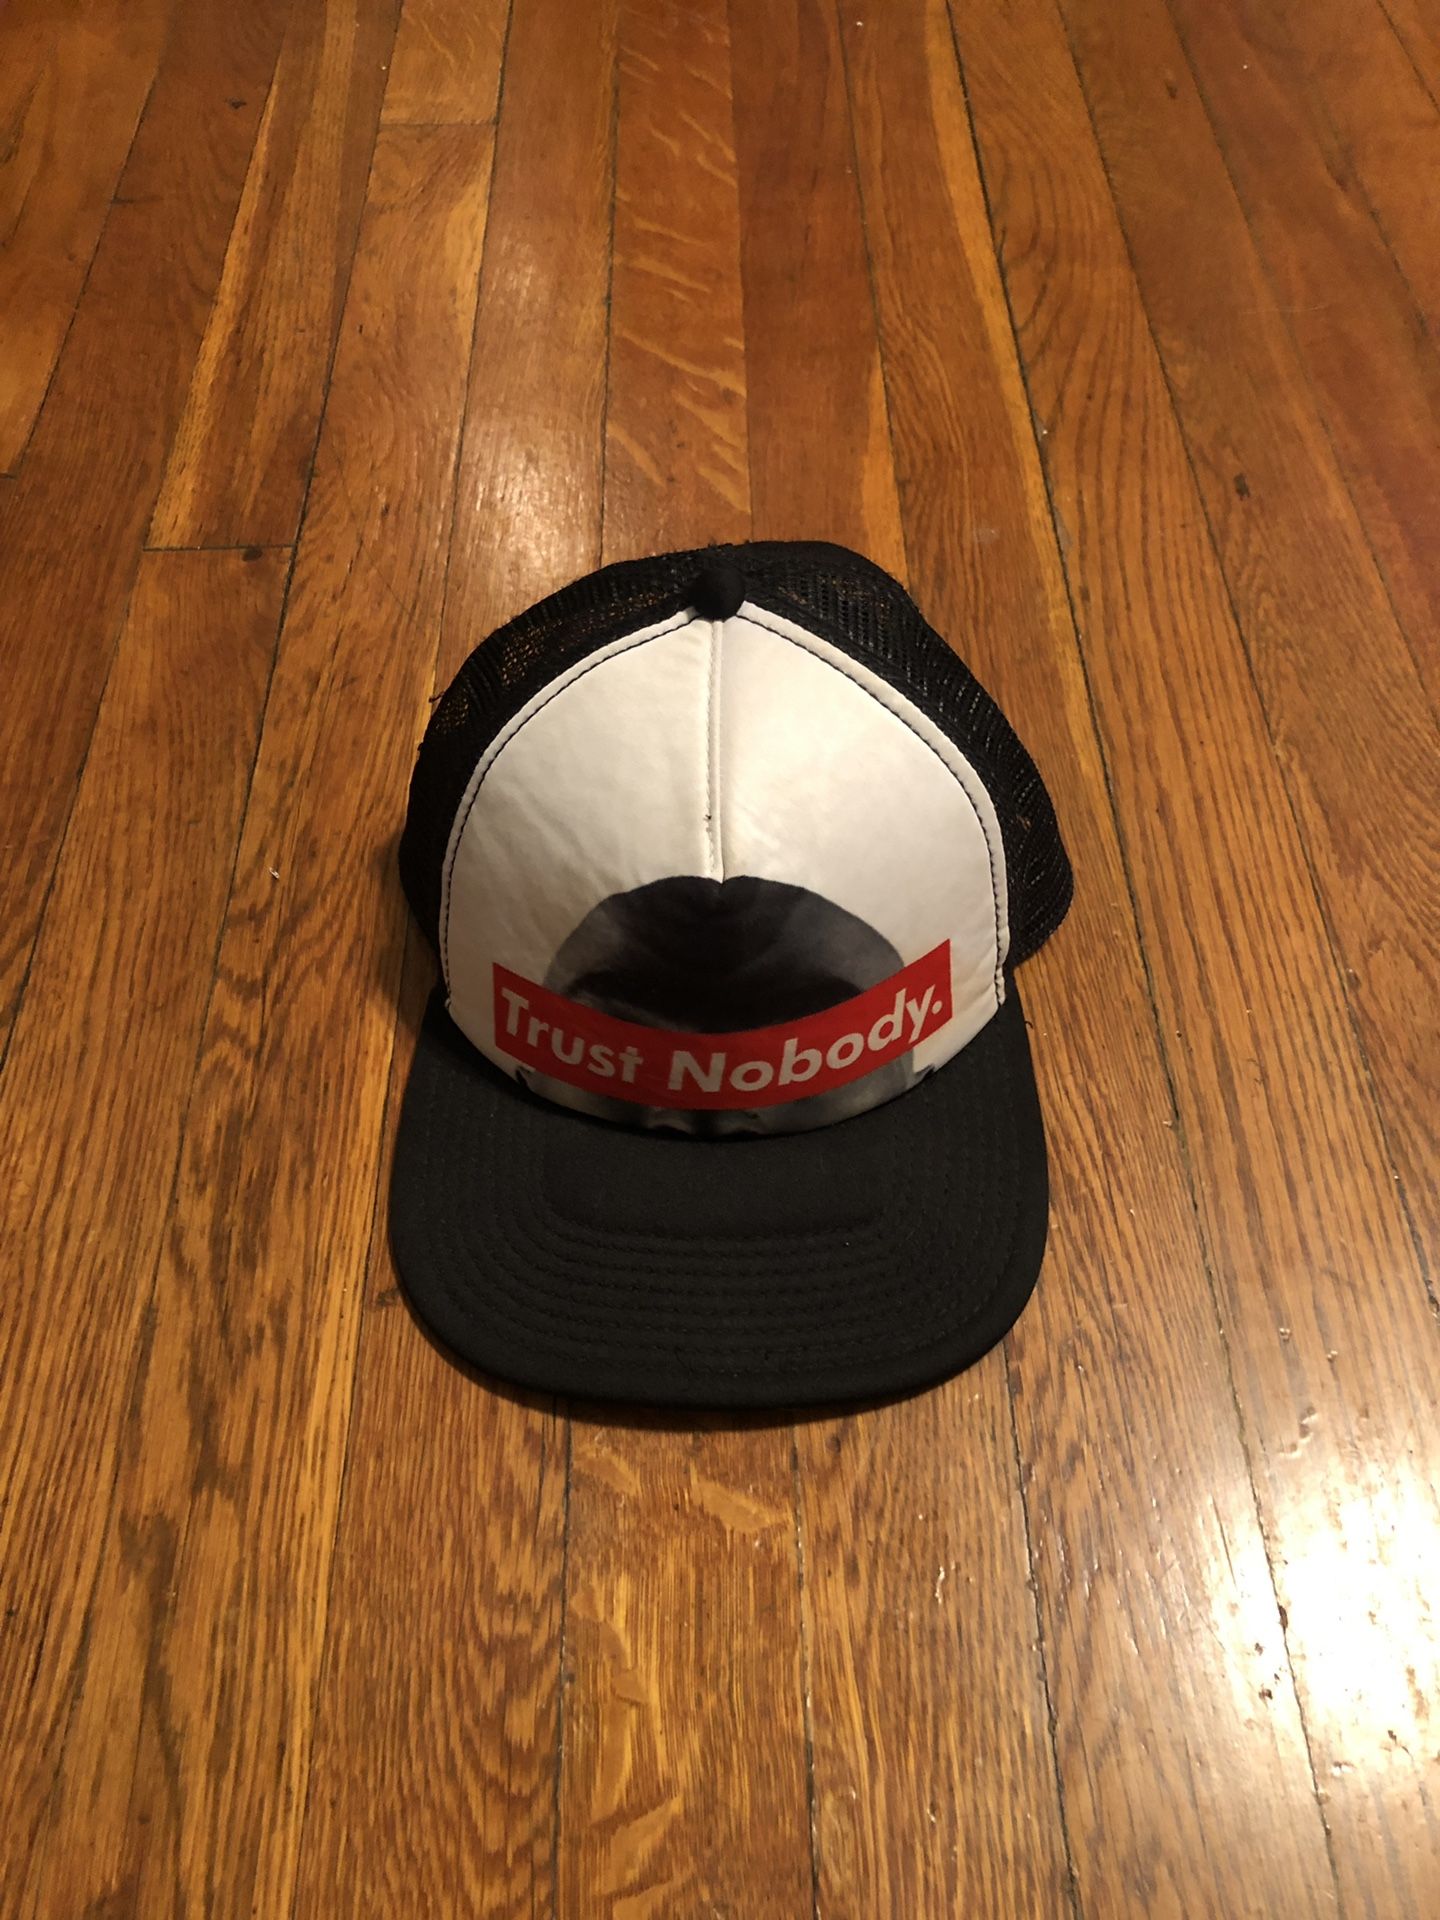 Men’s SnapBack baseball cap paid $24